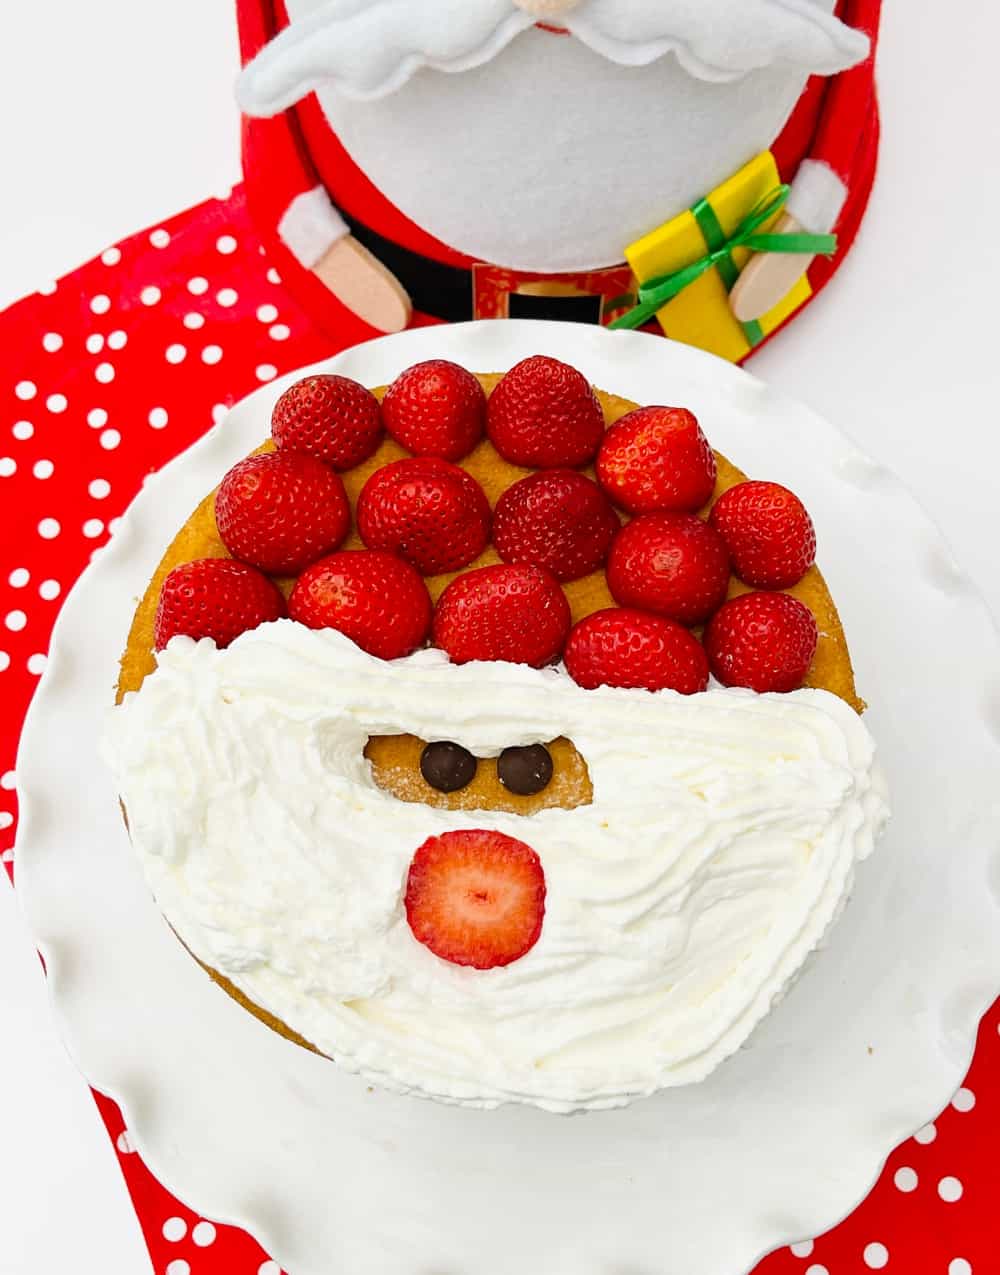 Santa Claus cake - Christmas cake decoration ideas - Kiddie Foodies